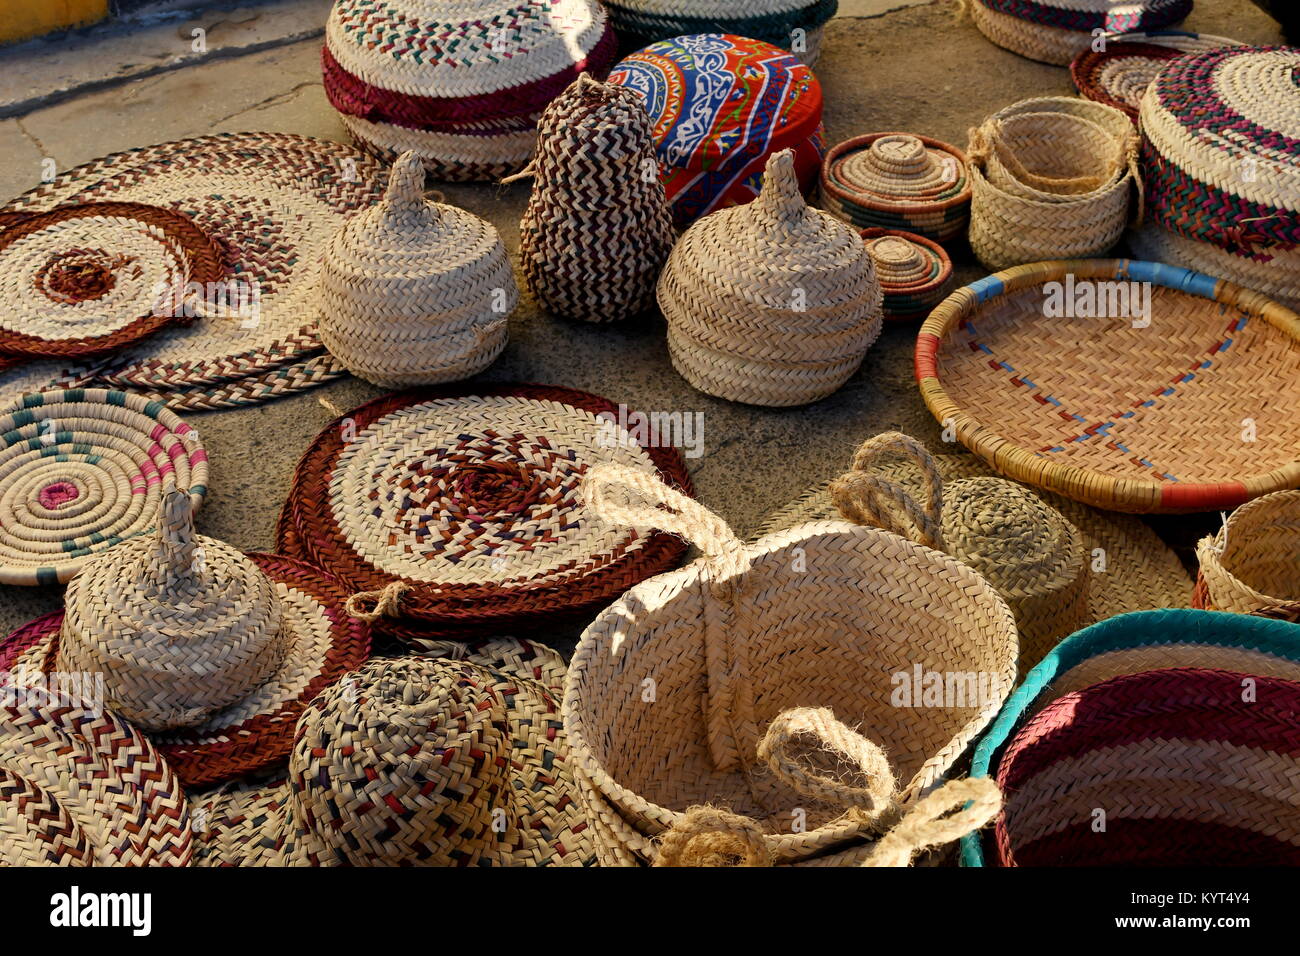 Arabia Saudita arti e mestieri artigianali Foto Stock